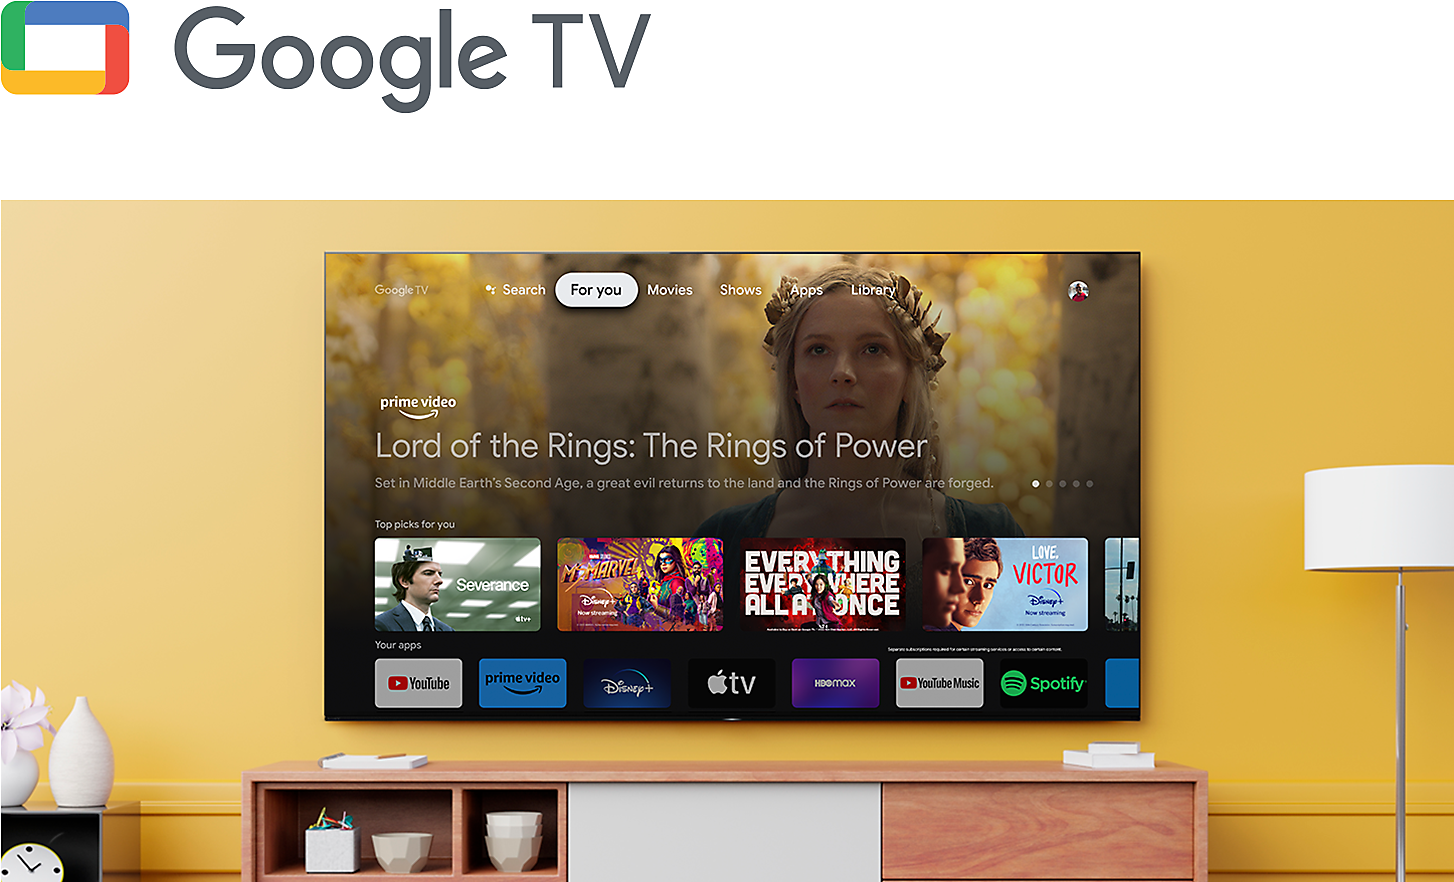 Logo Google TV nad obývacím pokojem s televizorem BRAVIA upevněným na stěně a ukazujícím řadu zábavních aplikací a streamovacích služeb